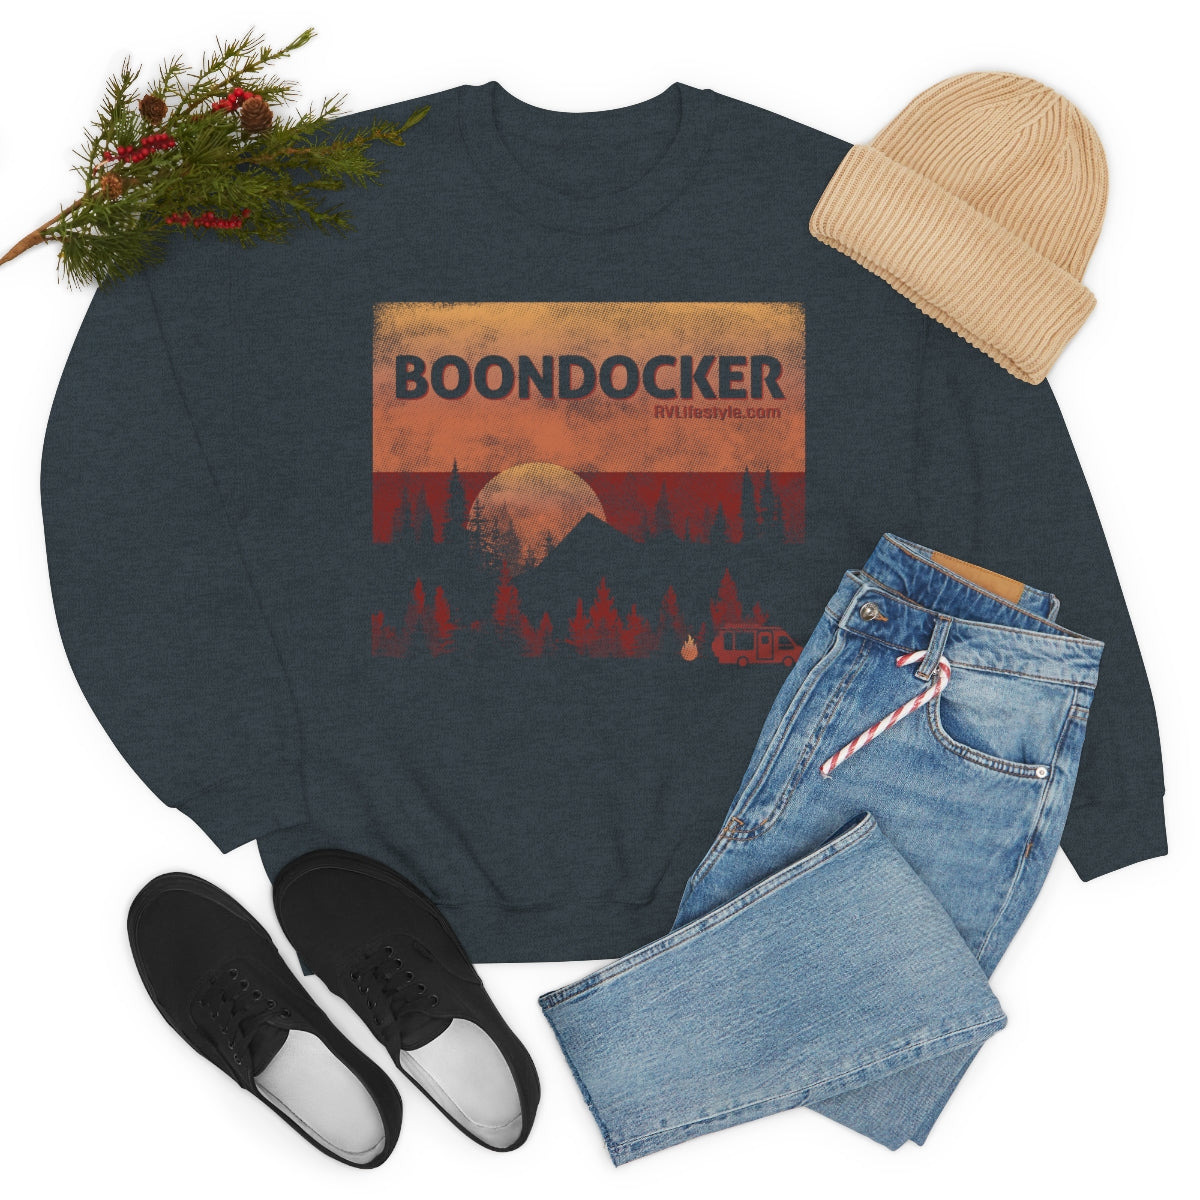 Boondocker Unisex Heavy Blend™ Crewneck Sweatshirt - Black, forest Green, Dark Heather, Navy